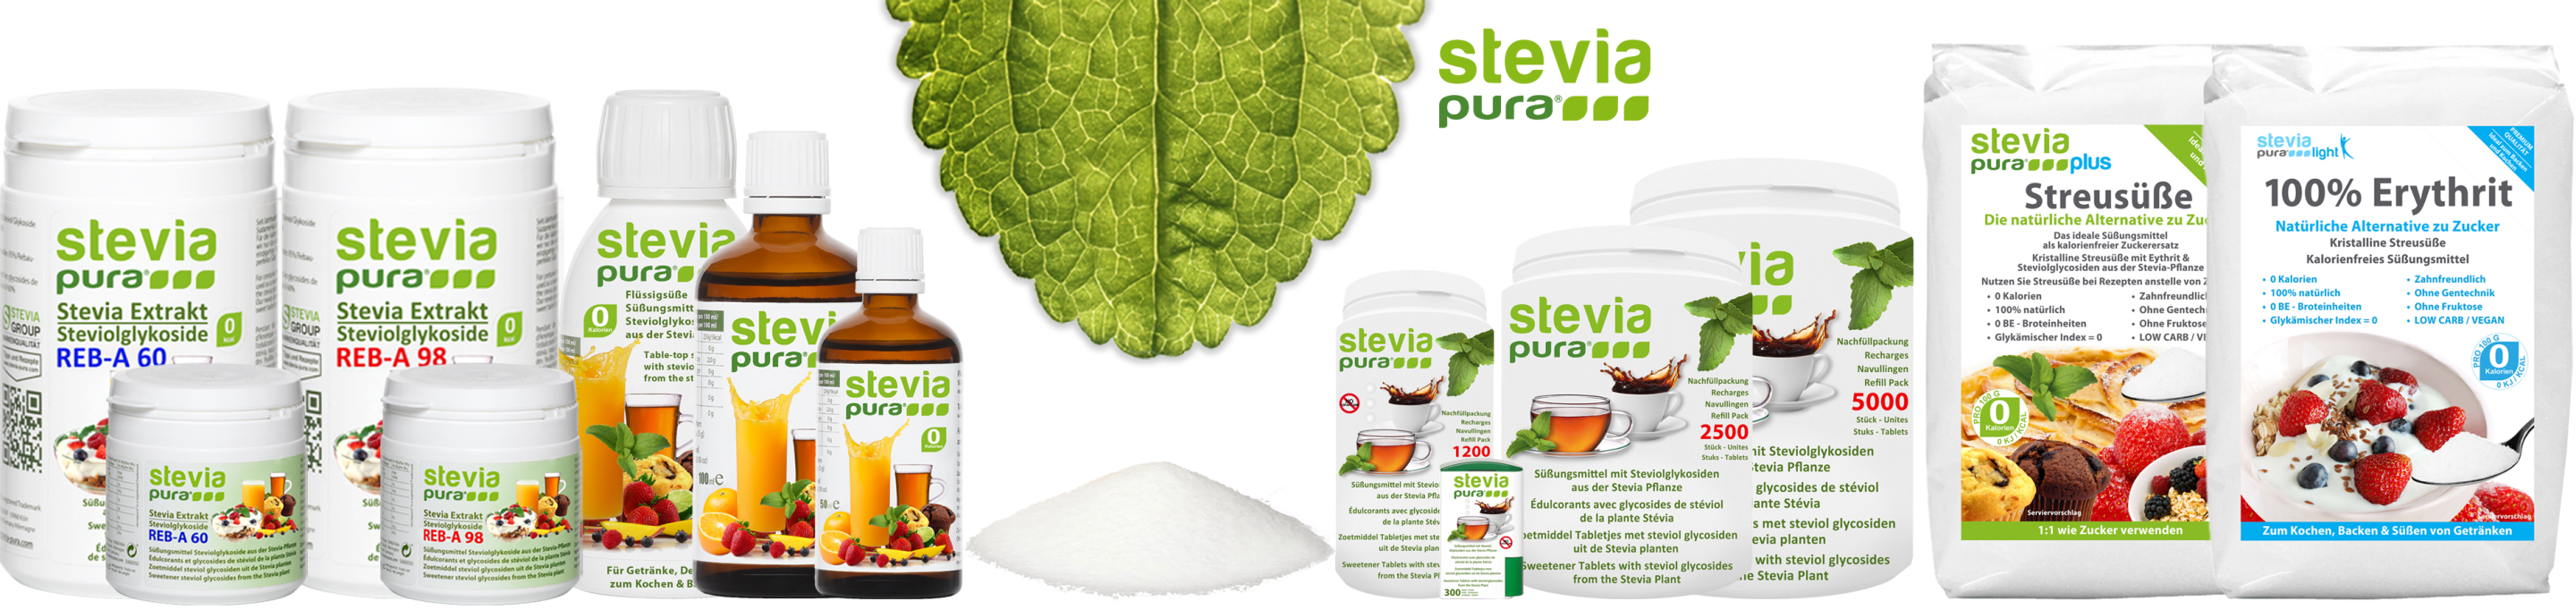 steviapura - Il marchio per dolcificanti di stevia di...